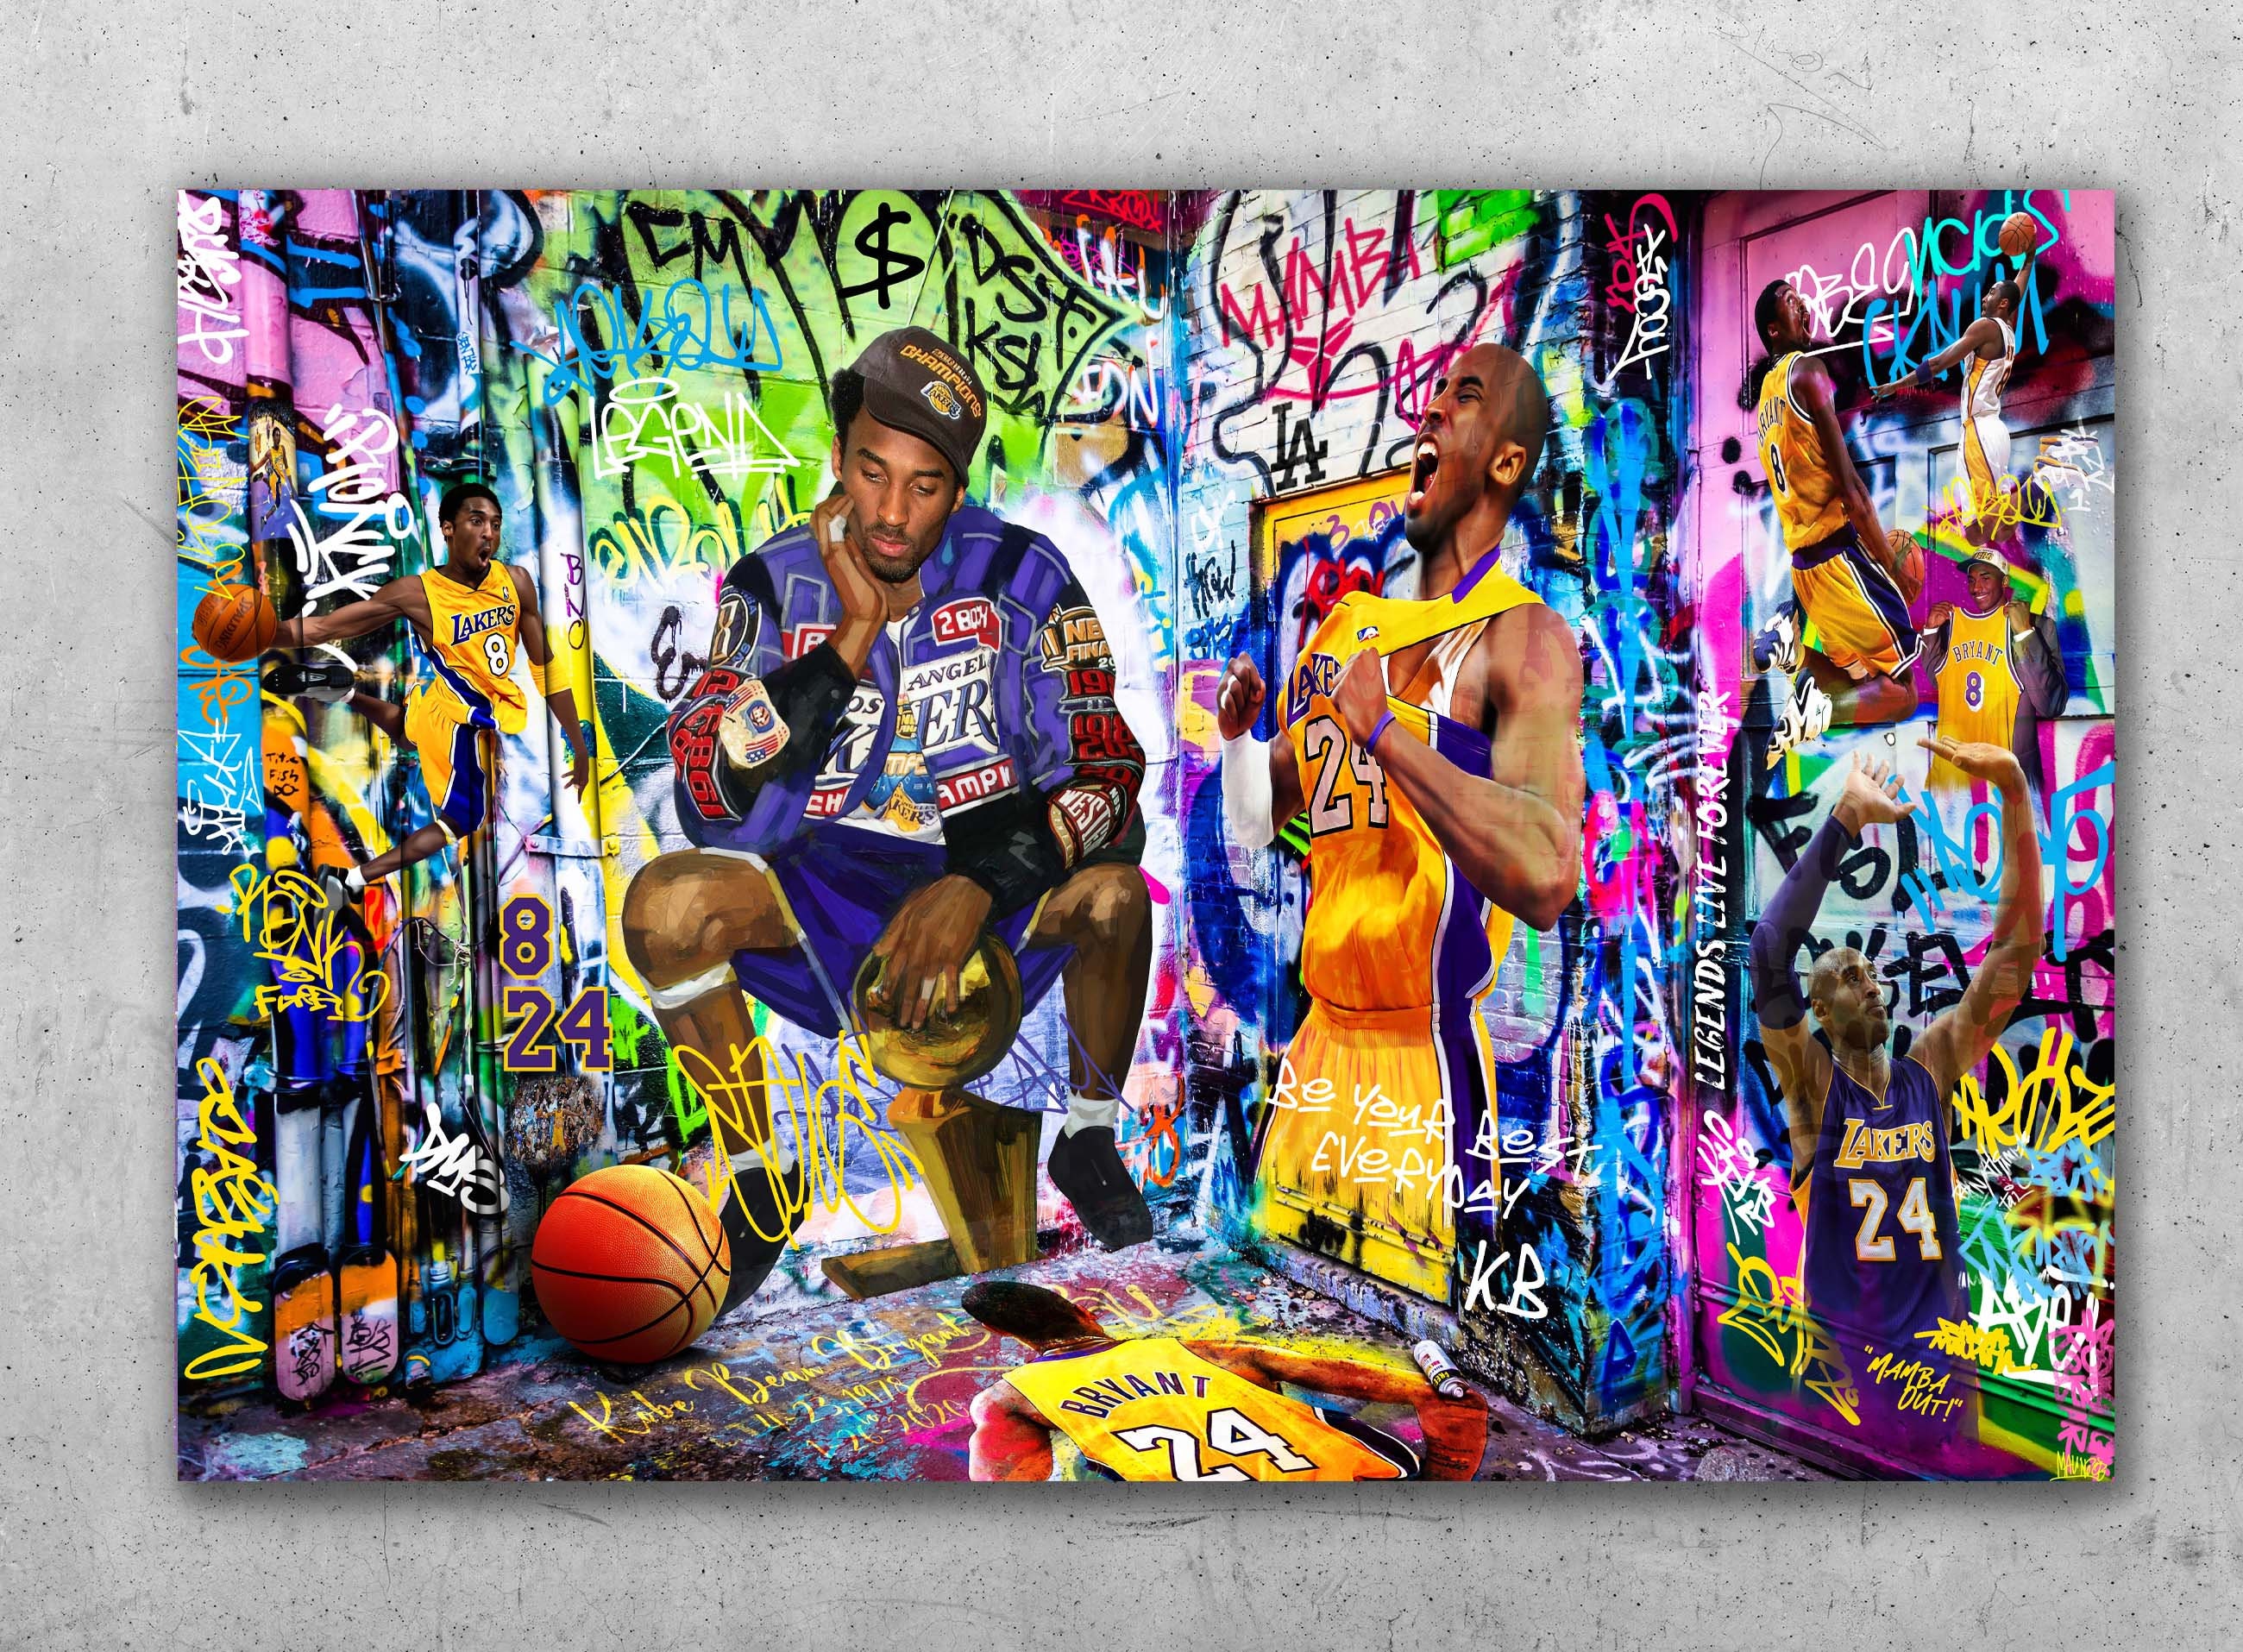 Kobe Bryant - Legendary Painting $1,000.00 – Bombshell Pop Art